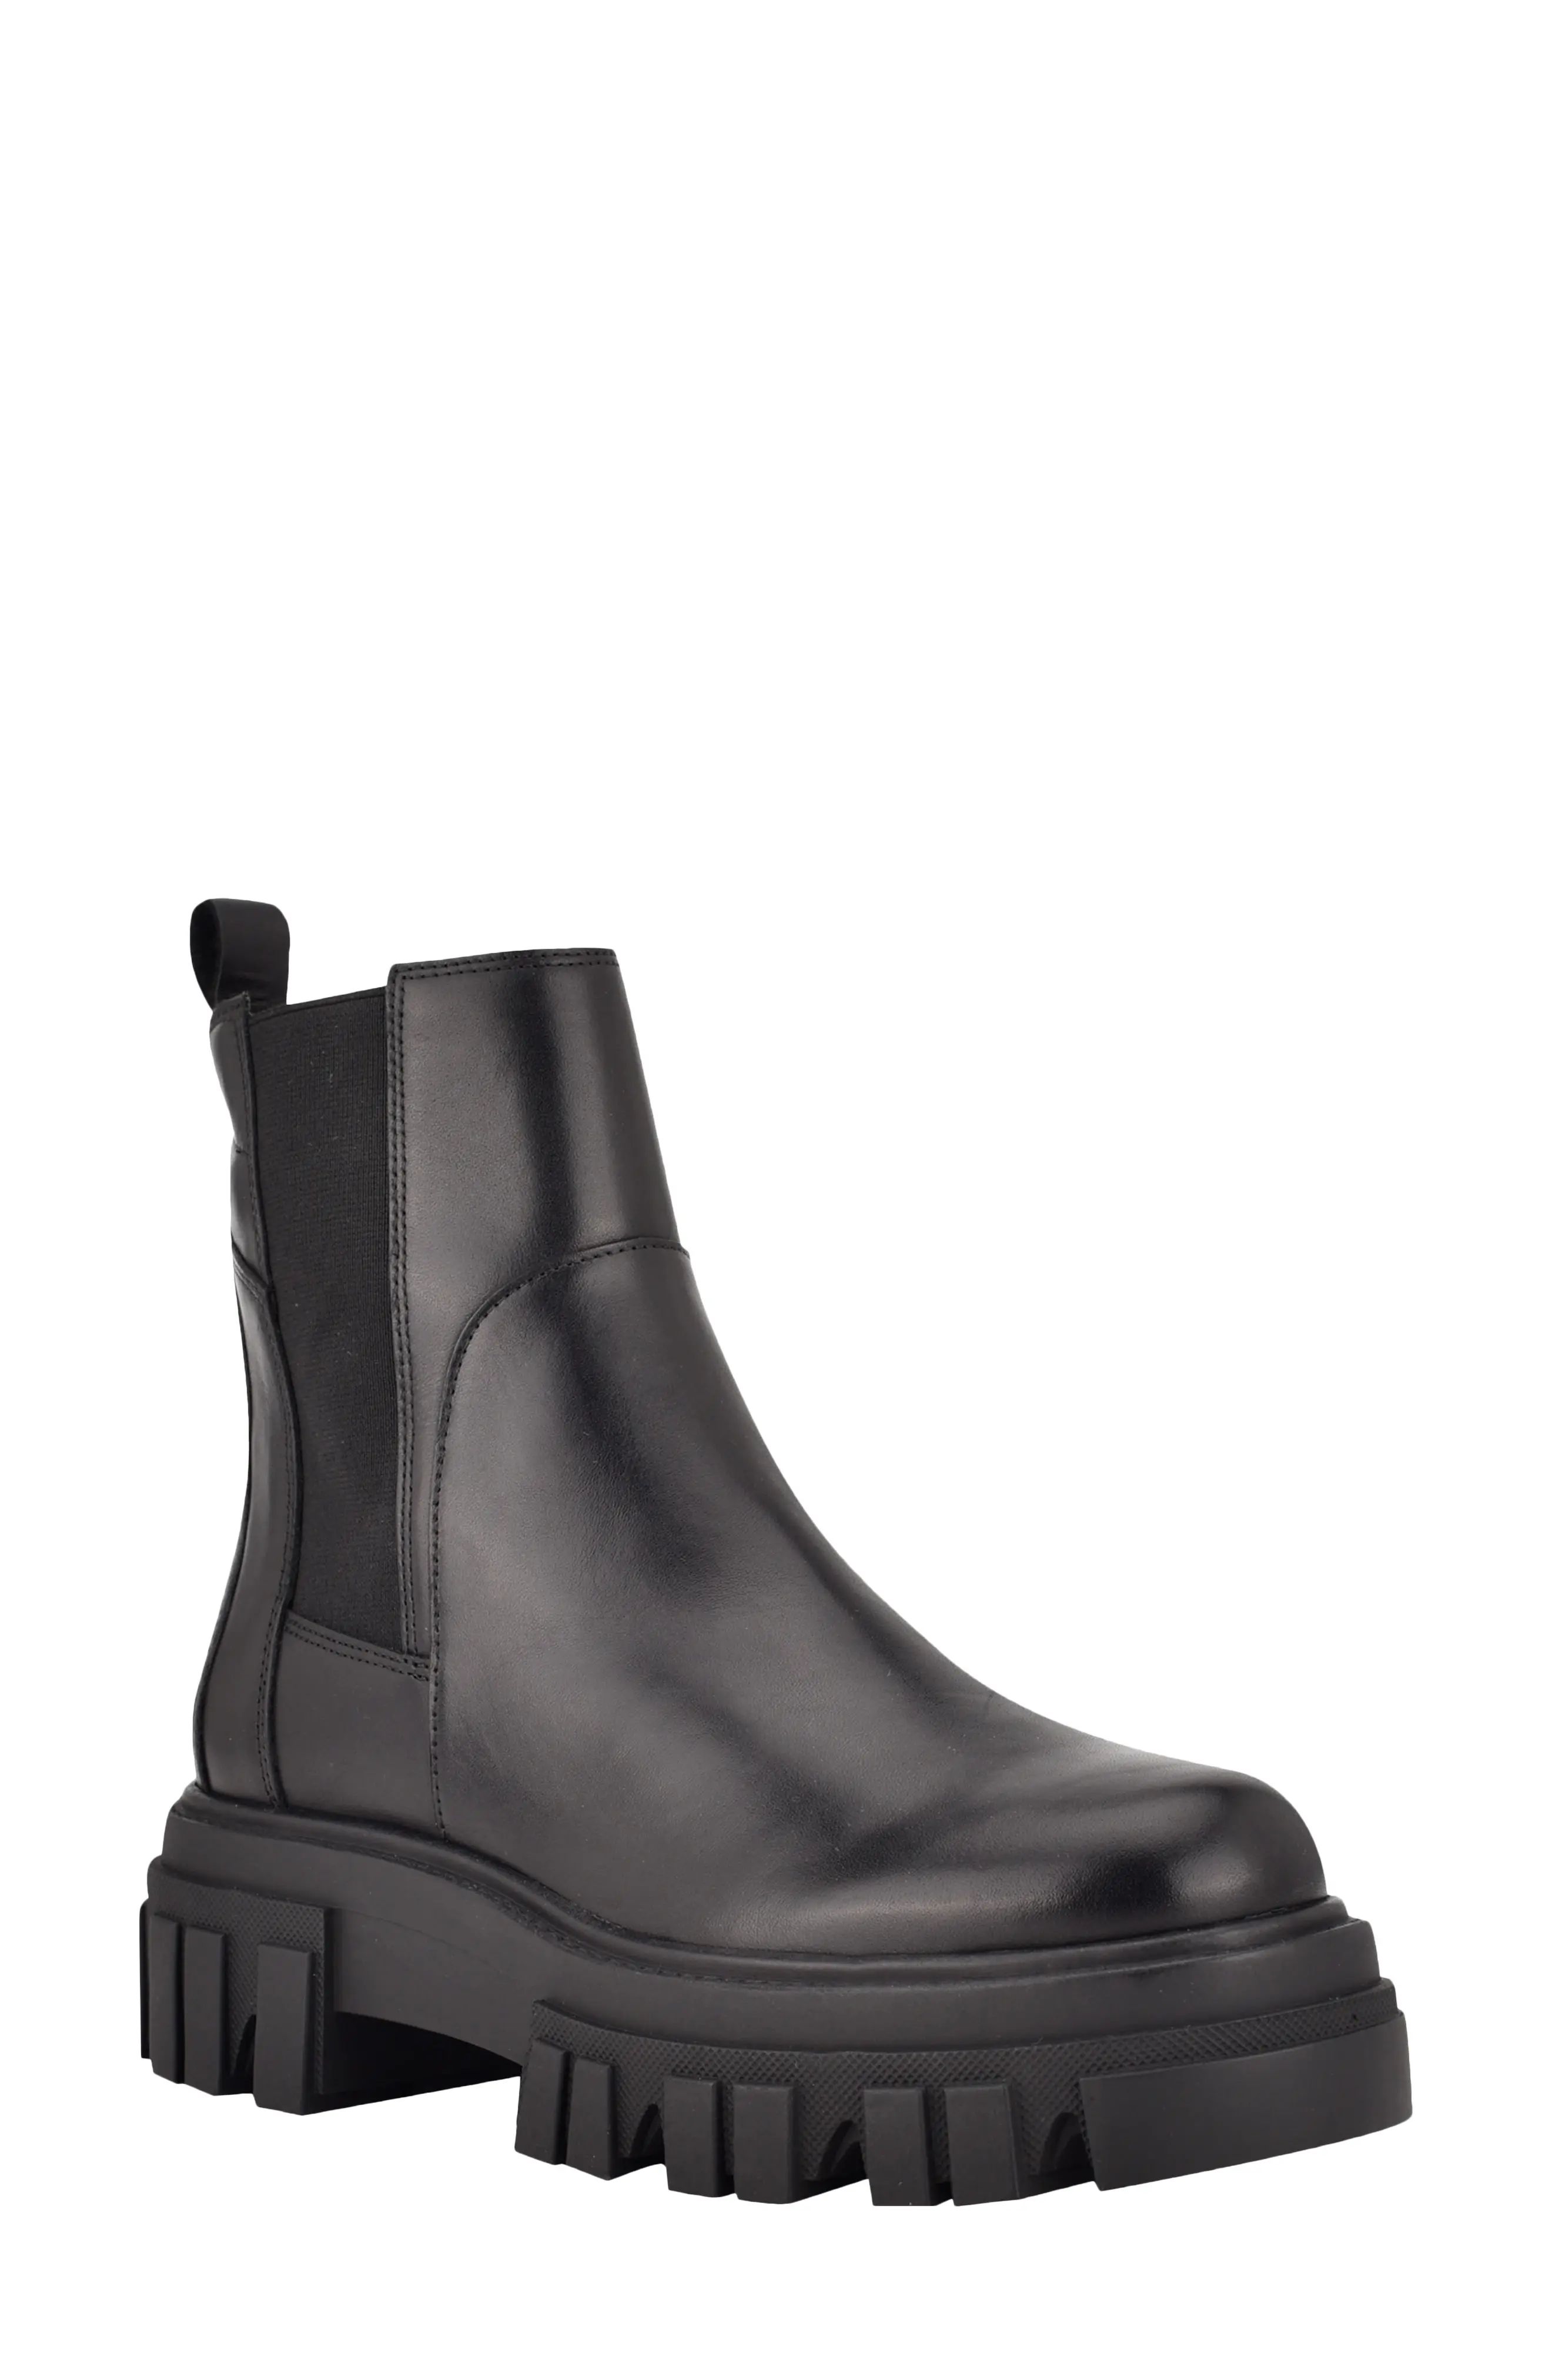 Marc Fisher LTD Meron Platform Chelsea Boot, Size 7 in Black/Black at Nordstrom | Nordstrom